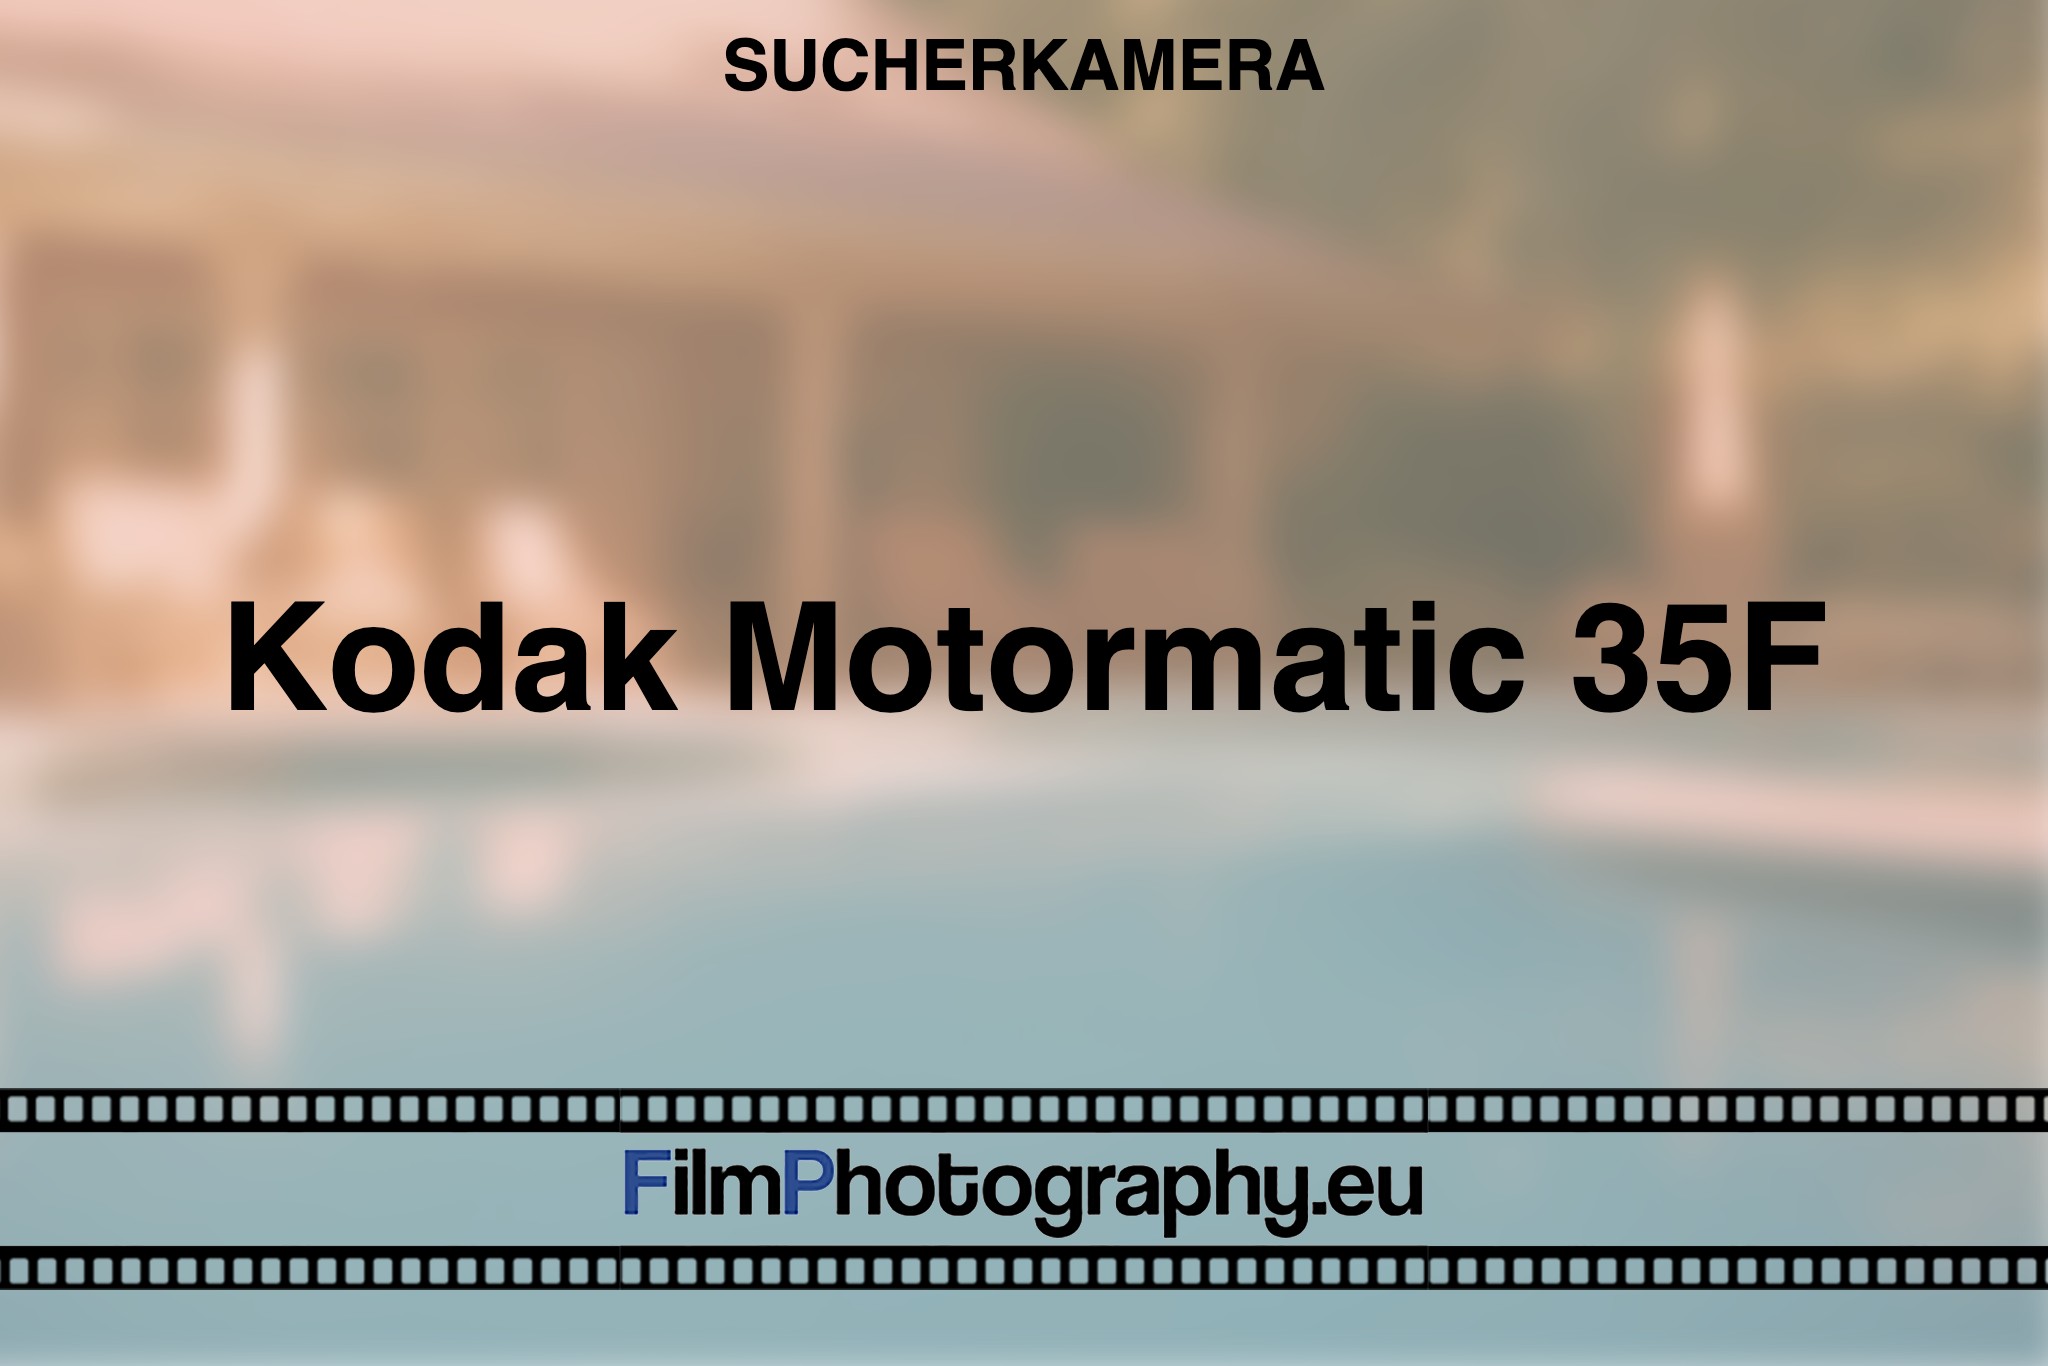 kodak-motormatic-35f-sucherkamera-bnv